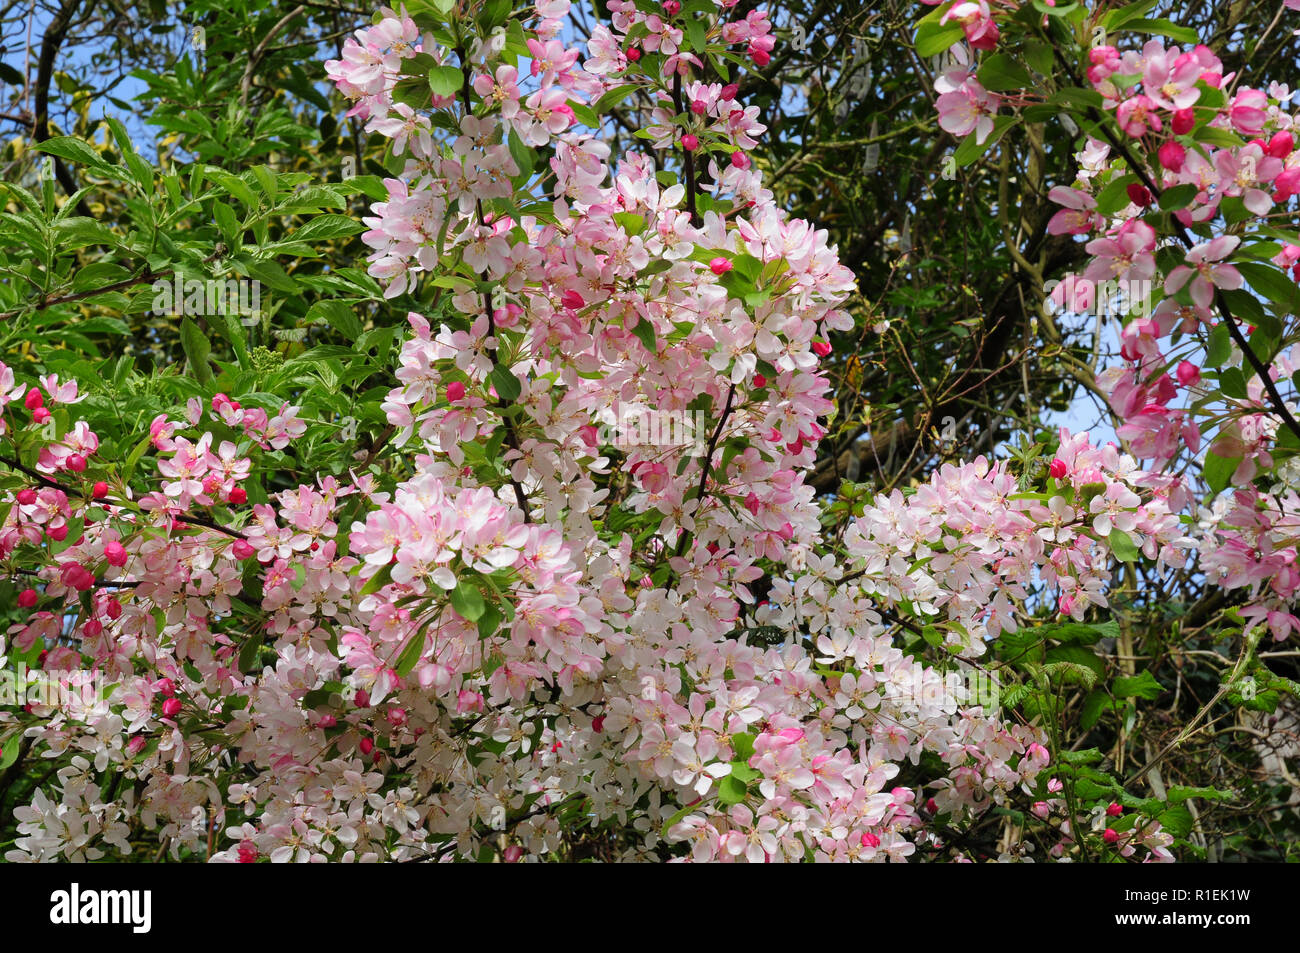 Blumen von wilden Holzapfel, blühen in einer Hecke. Malus sylvestris Stockfoto